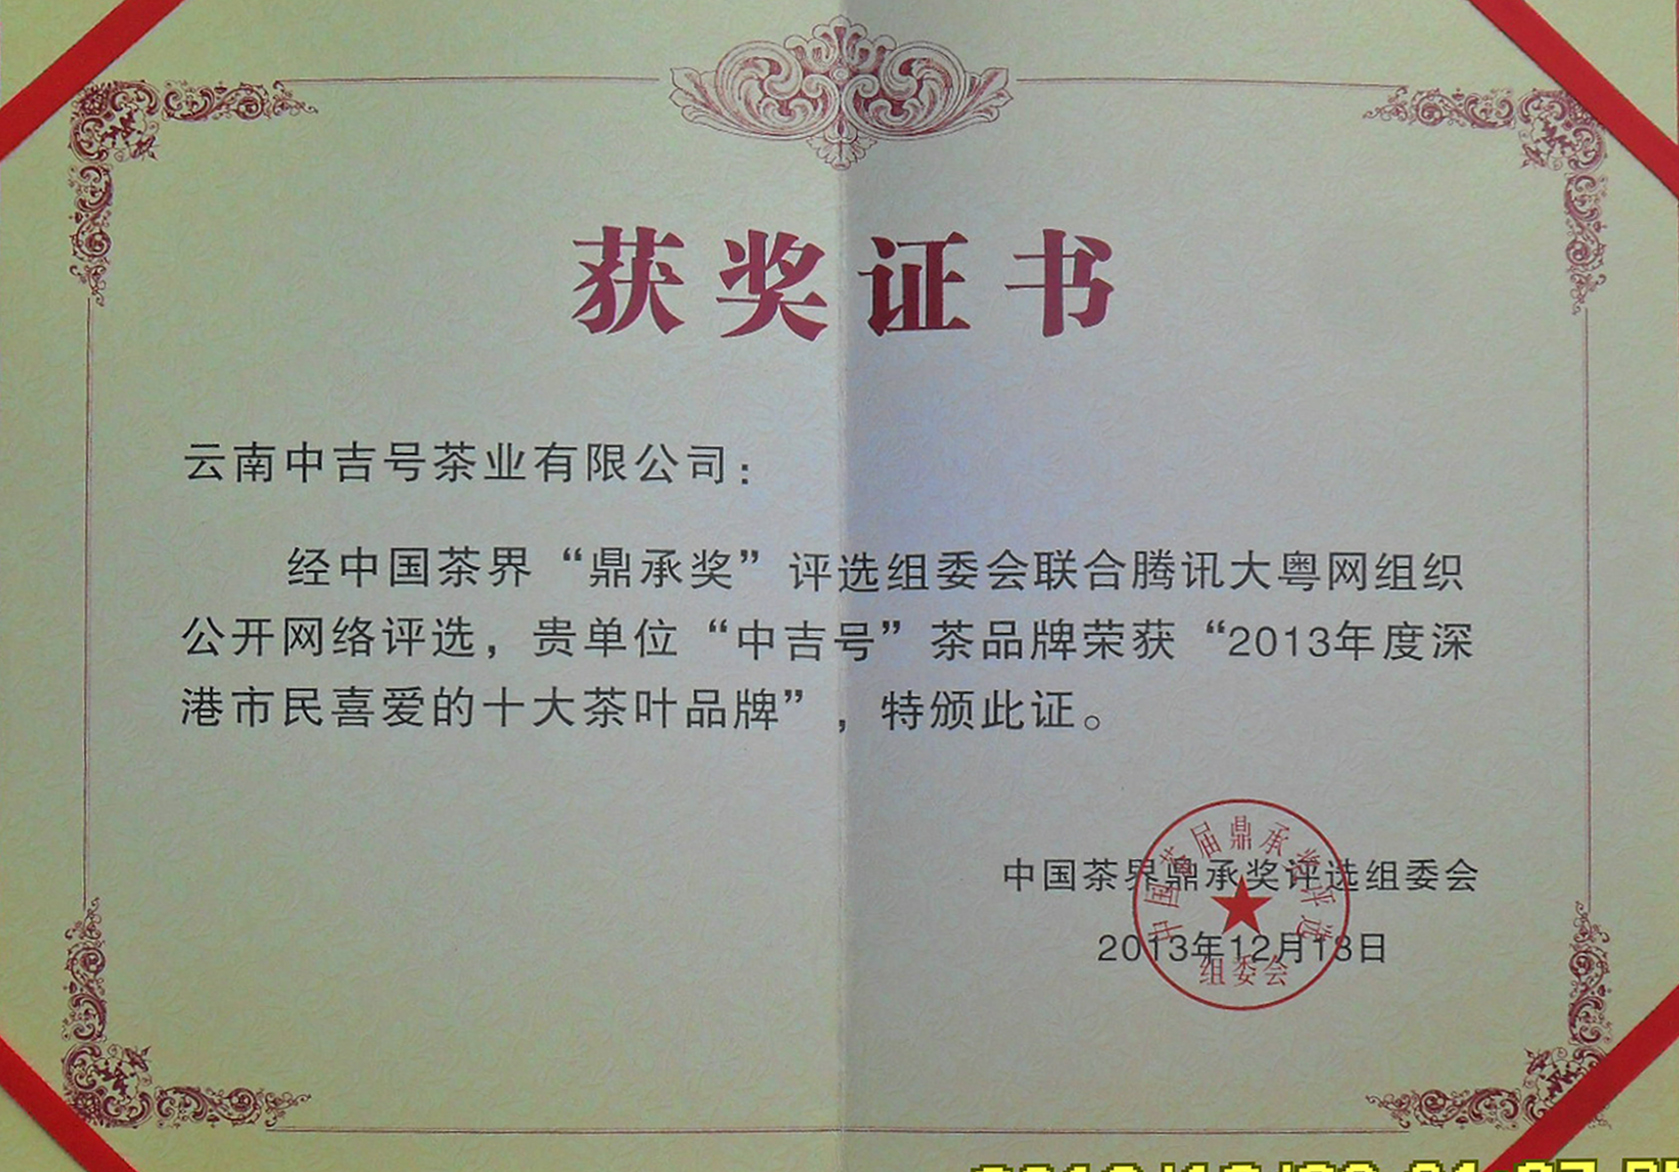 中国茶界“鼎承奖”2013年度深港市民喜爱的十大茶叶品牌